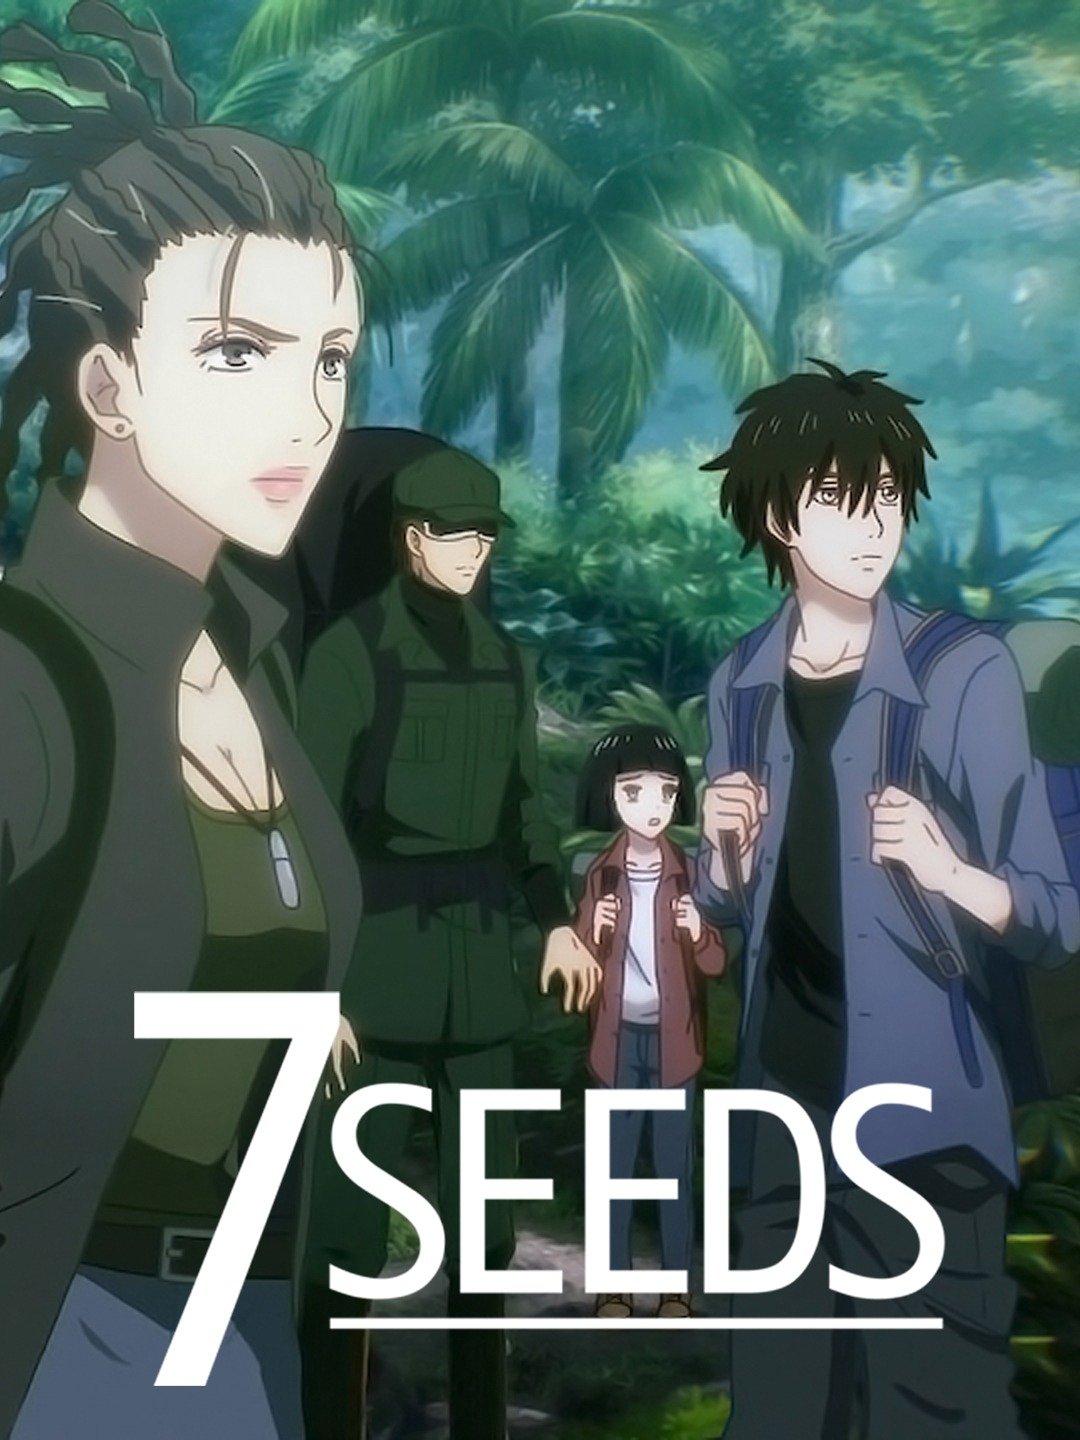 22 7 seeds ideas  seeds anime manga